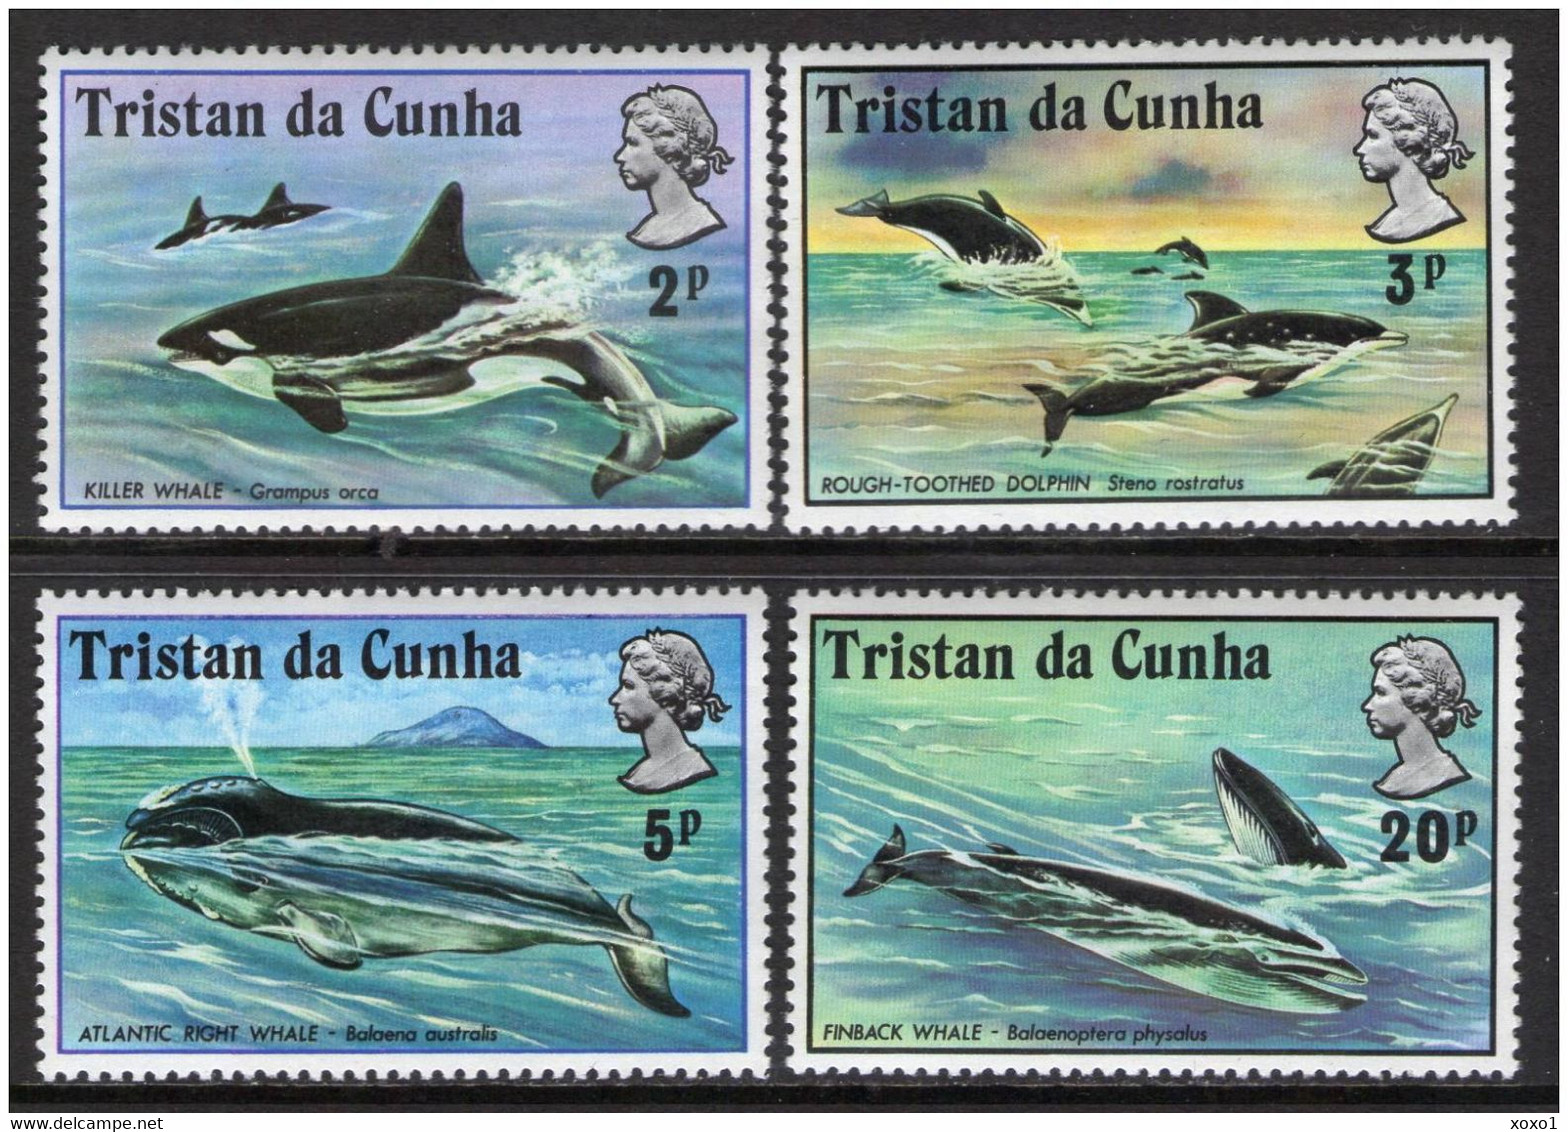 Tristan Da Cunha 1975 MiNr. 202 - 205 Wale  Whales  Marine Mammals 4v  MNH** 8.50 € - Tristan Da Cunha